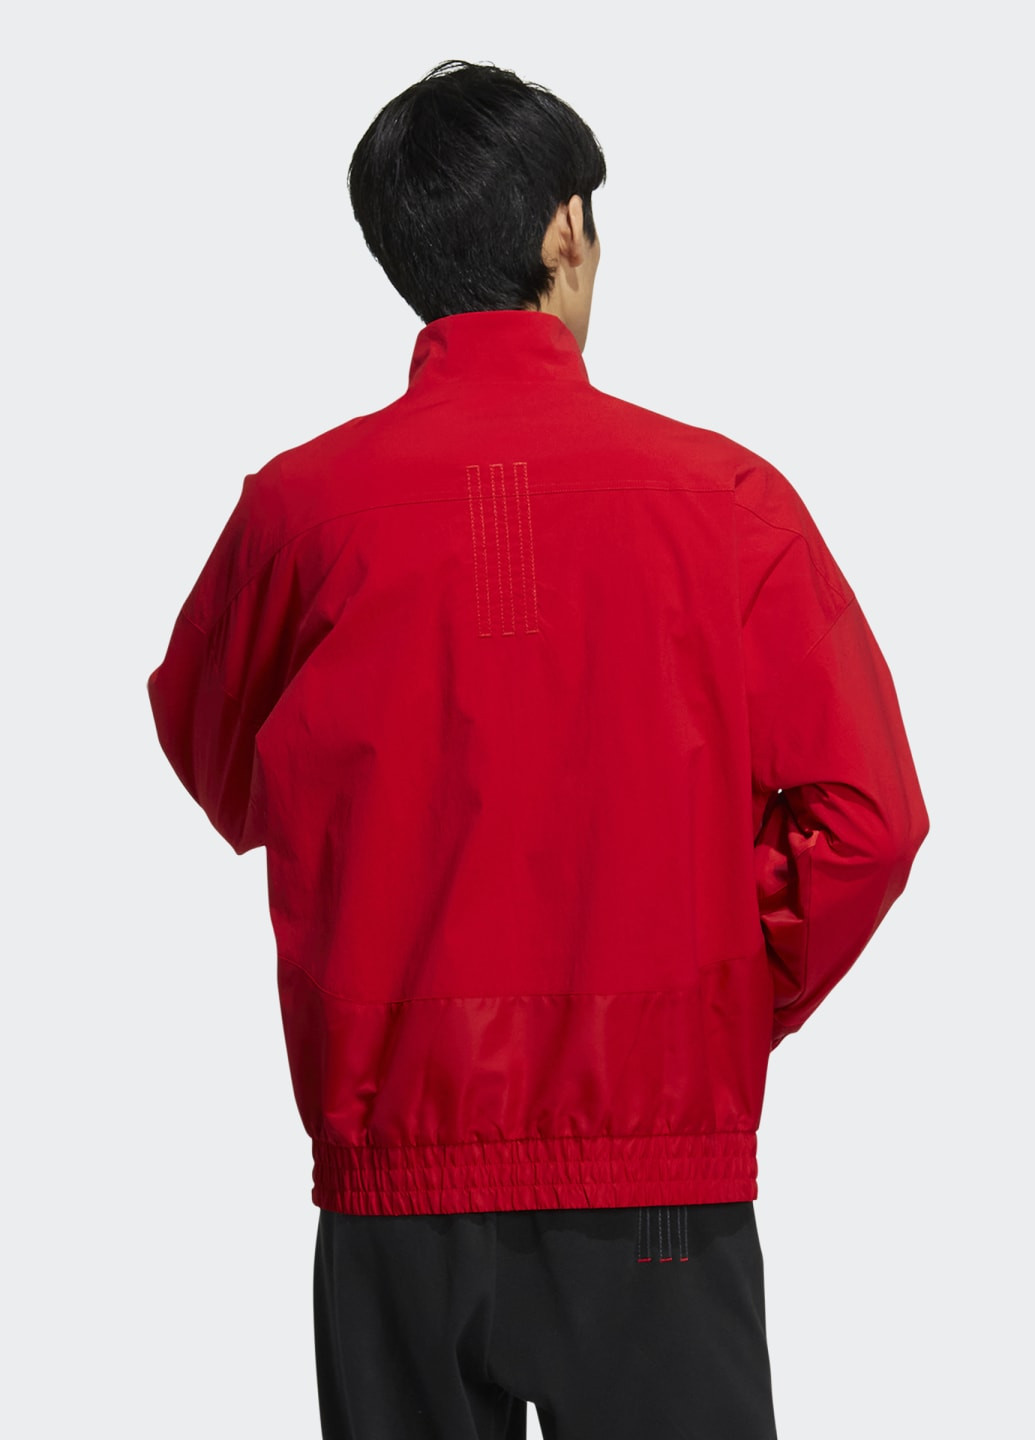 Красная демисезонная куртка cny adidas